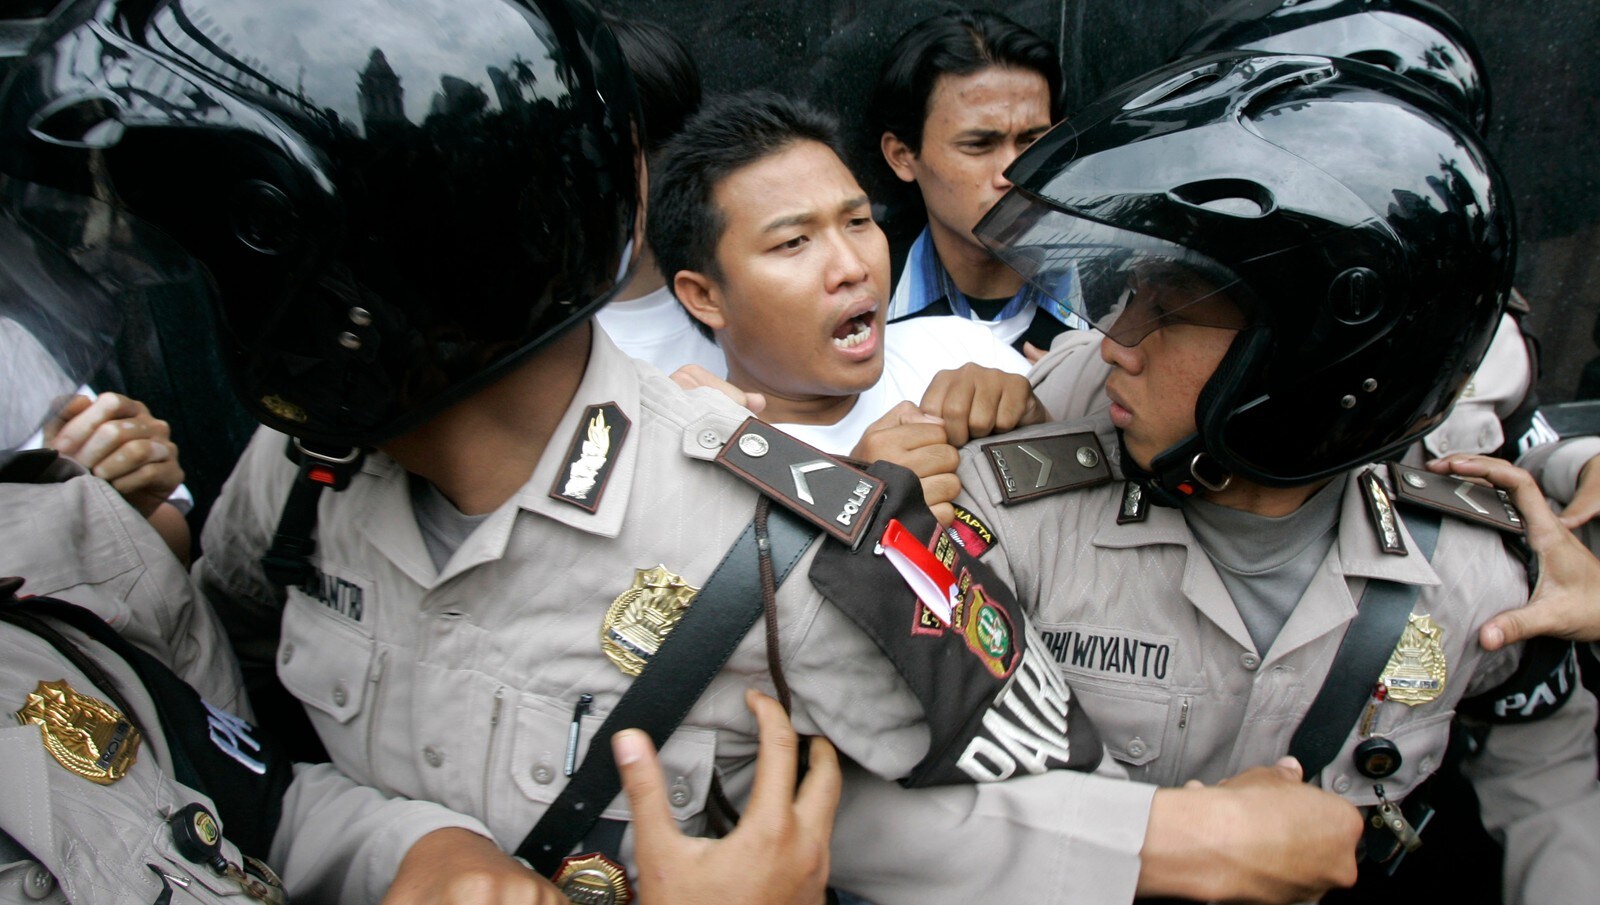  OL  protester i Indonesia  NRK Urix Utenriksnyheter og 